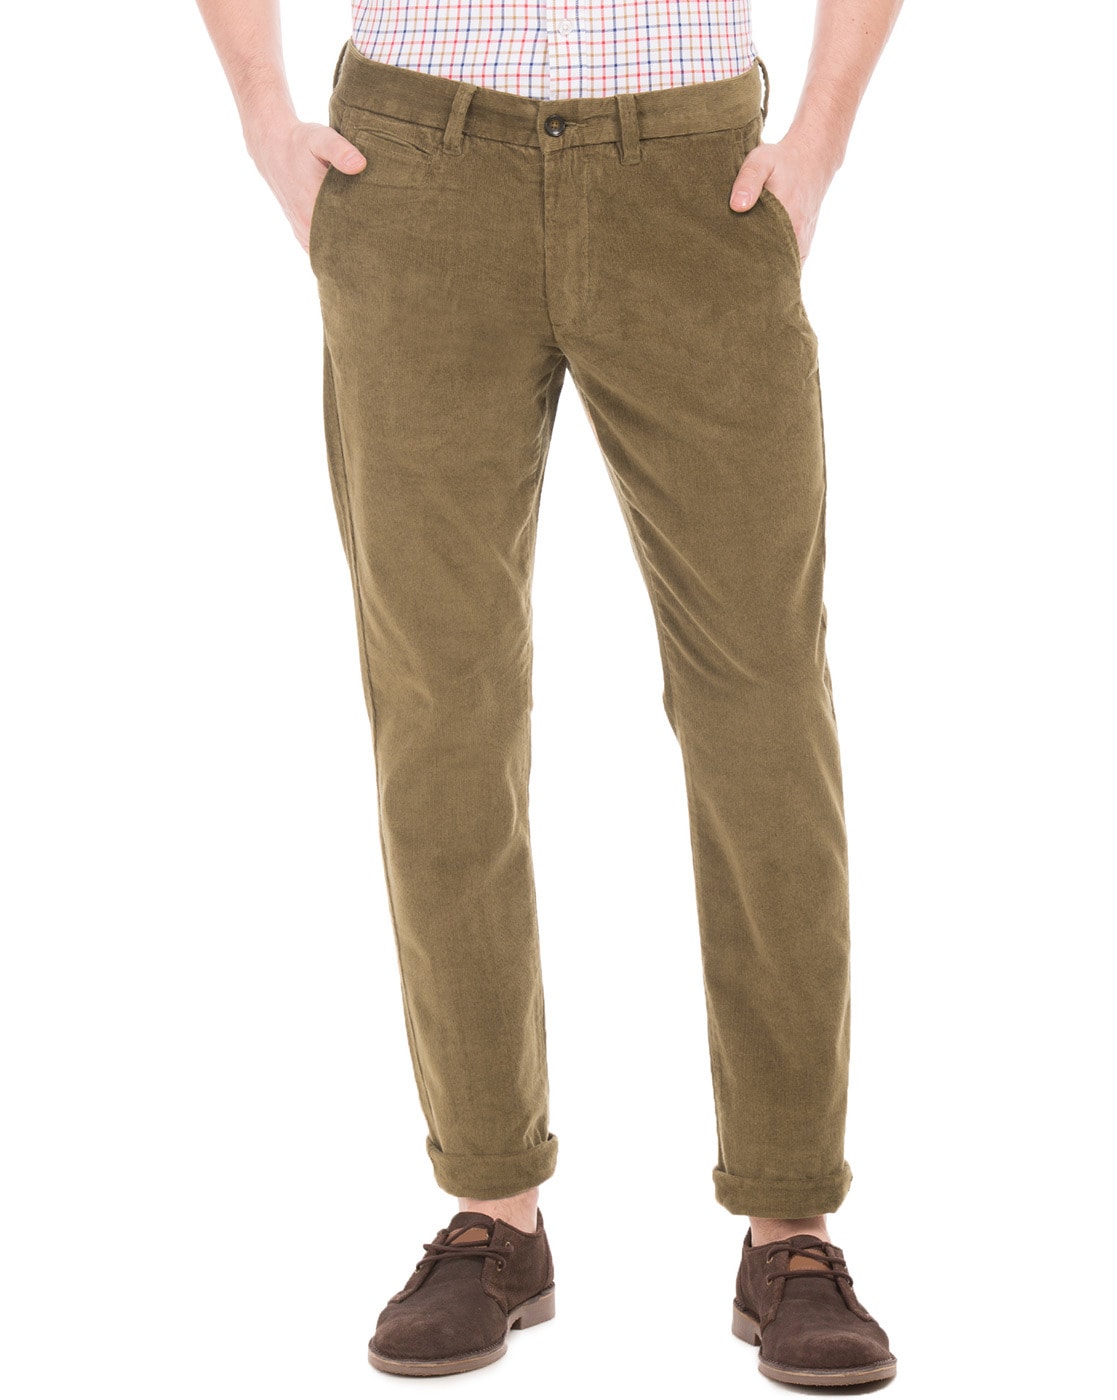 Buy Khaki Trousers  Pants for Men by ARROW Online  Ajiocom